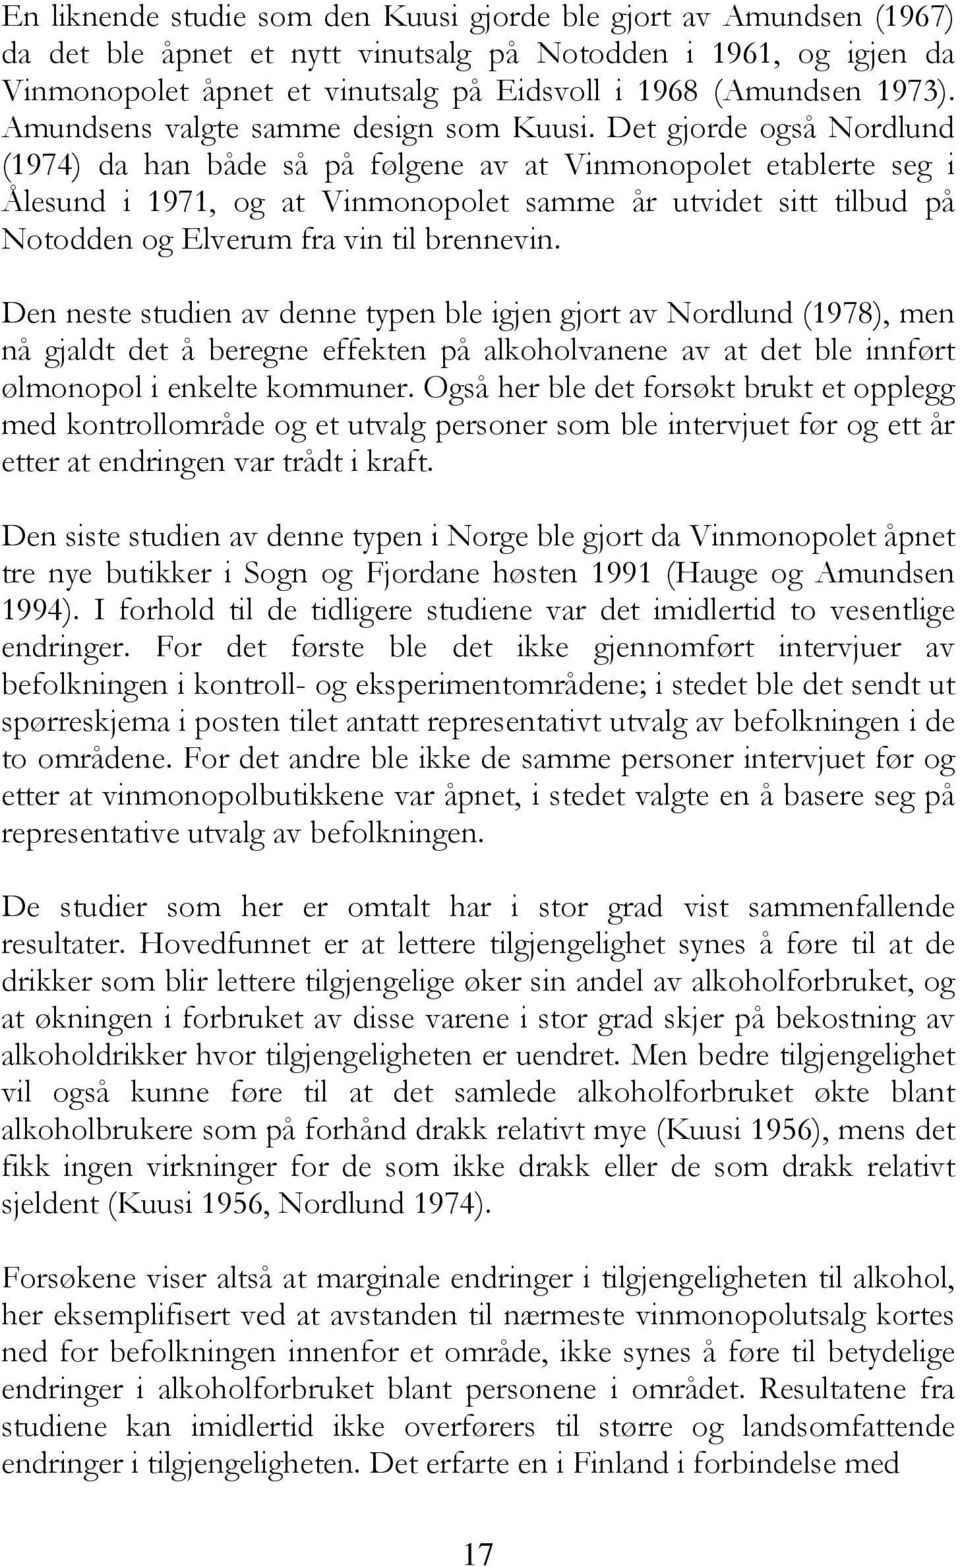 Det gjorde også Nordlund (1974) da han både så på følgene av at Vinmonopolet etablerte seg i Ålesund i 1971, og at Vinmonopolet samme år utvidet sitt tilbud på Notodden og Elverum fra vin til